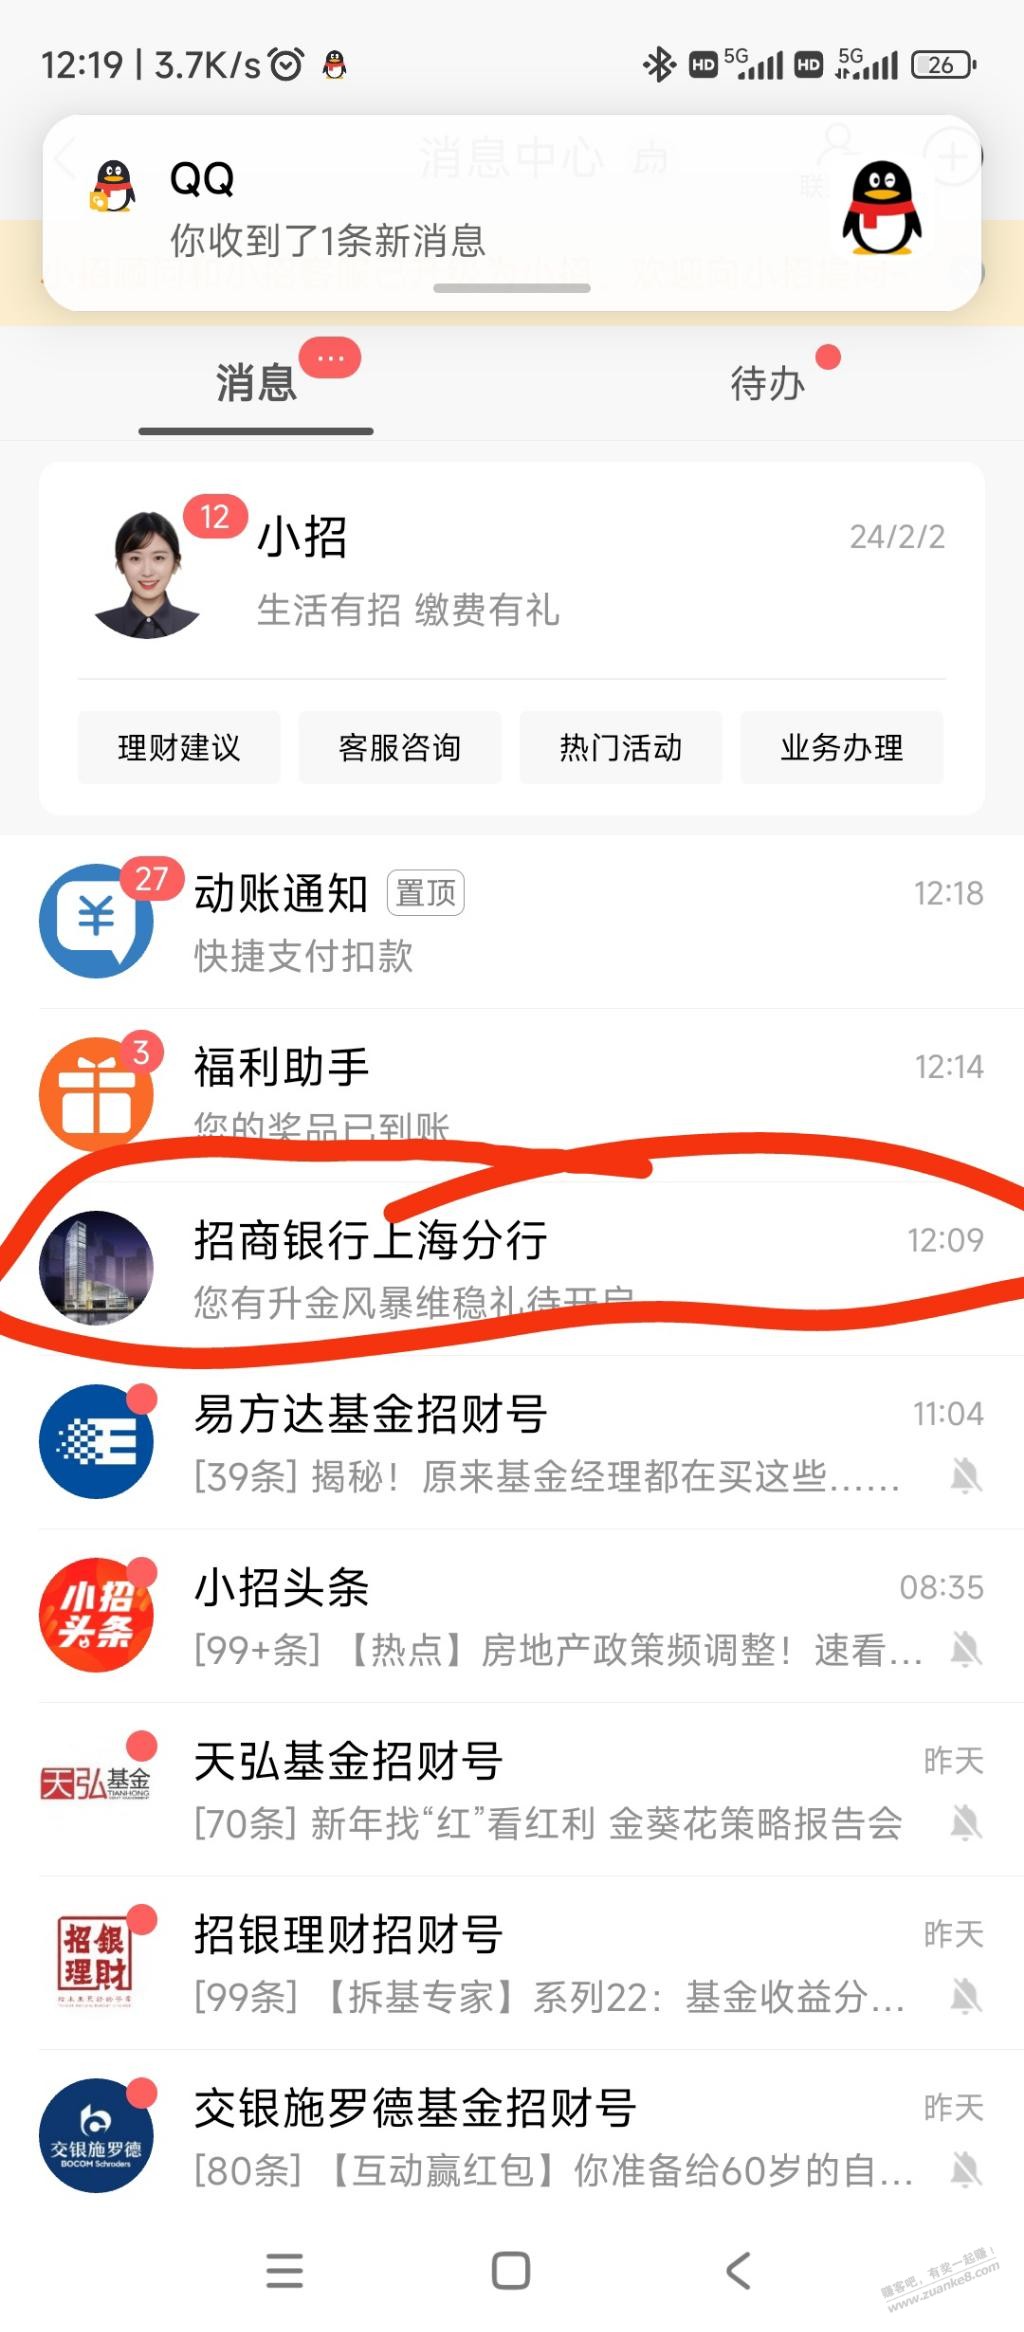 招商银行app 上海 瘦腰-惠小助(52huixz.com)